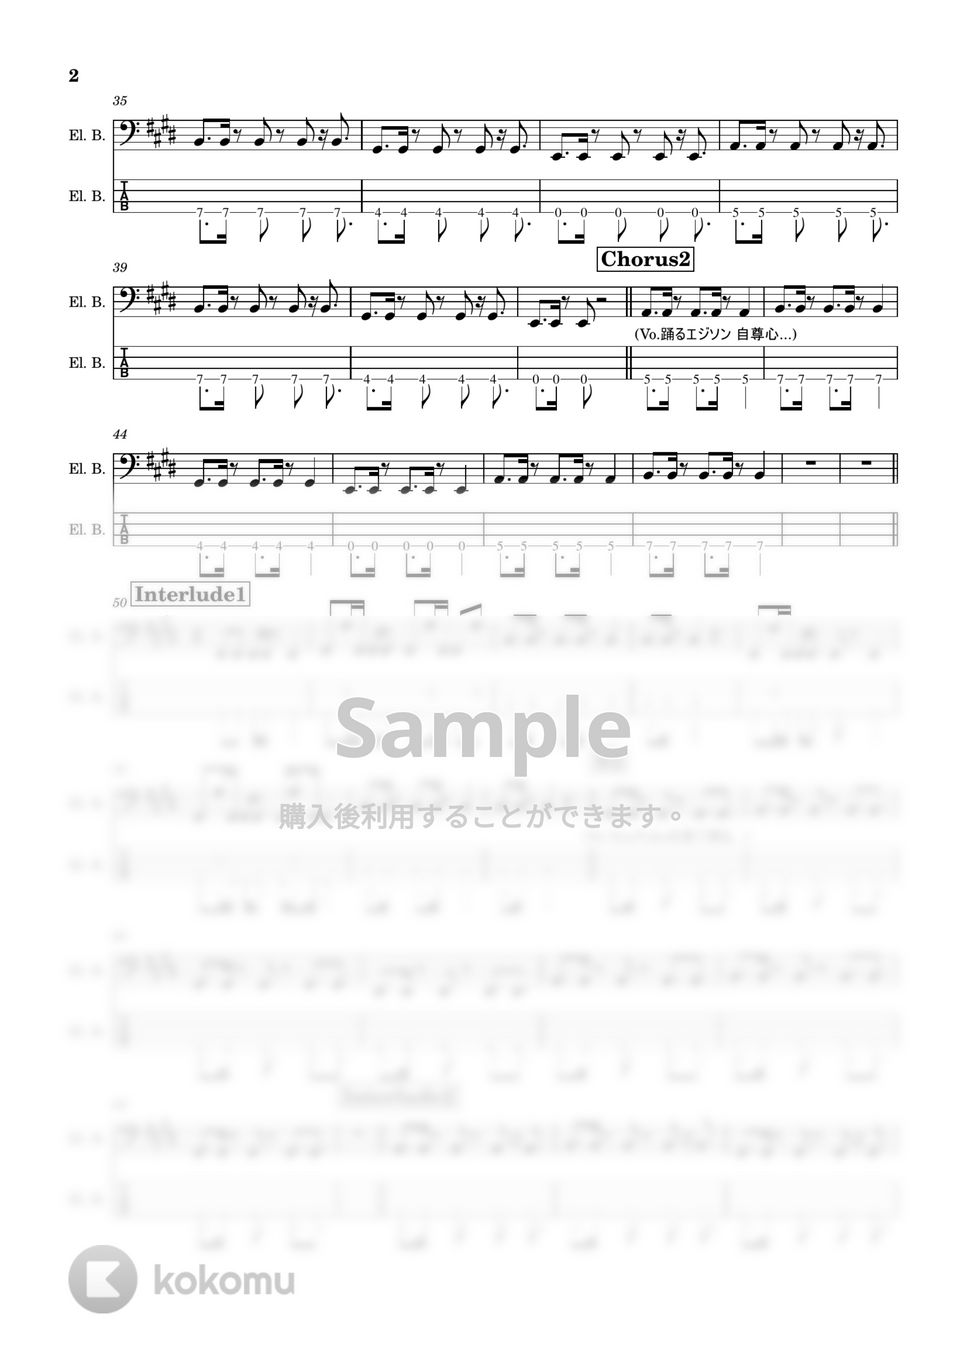 水曜日のカンパネラ - エジソン(4弦) (エジソン/水曜日のカンパネラ/) by TARUO's_Bass_Score